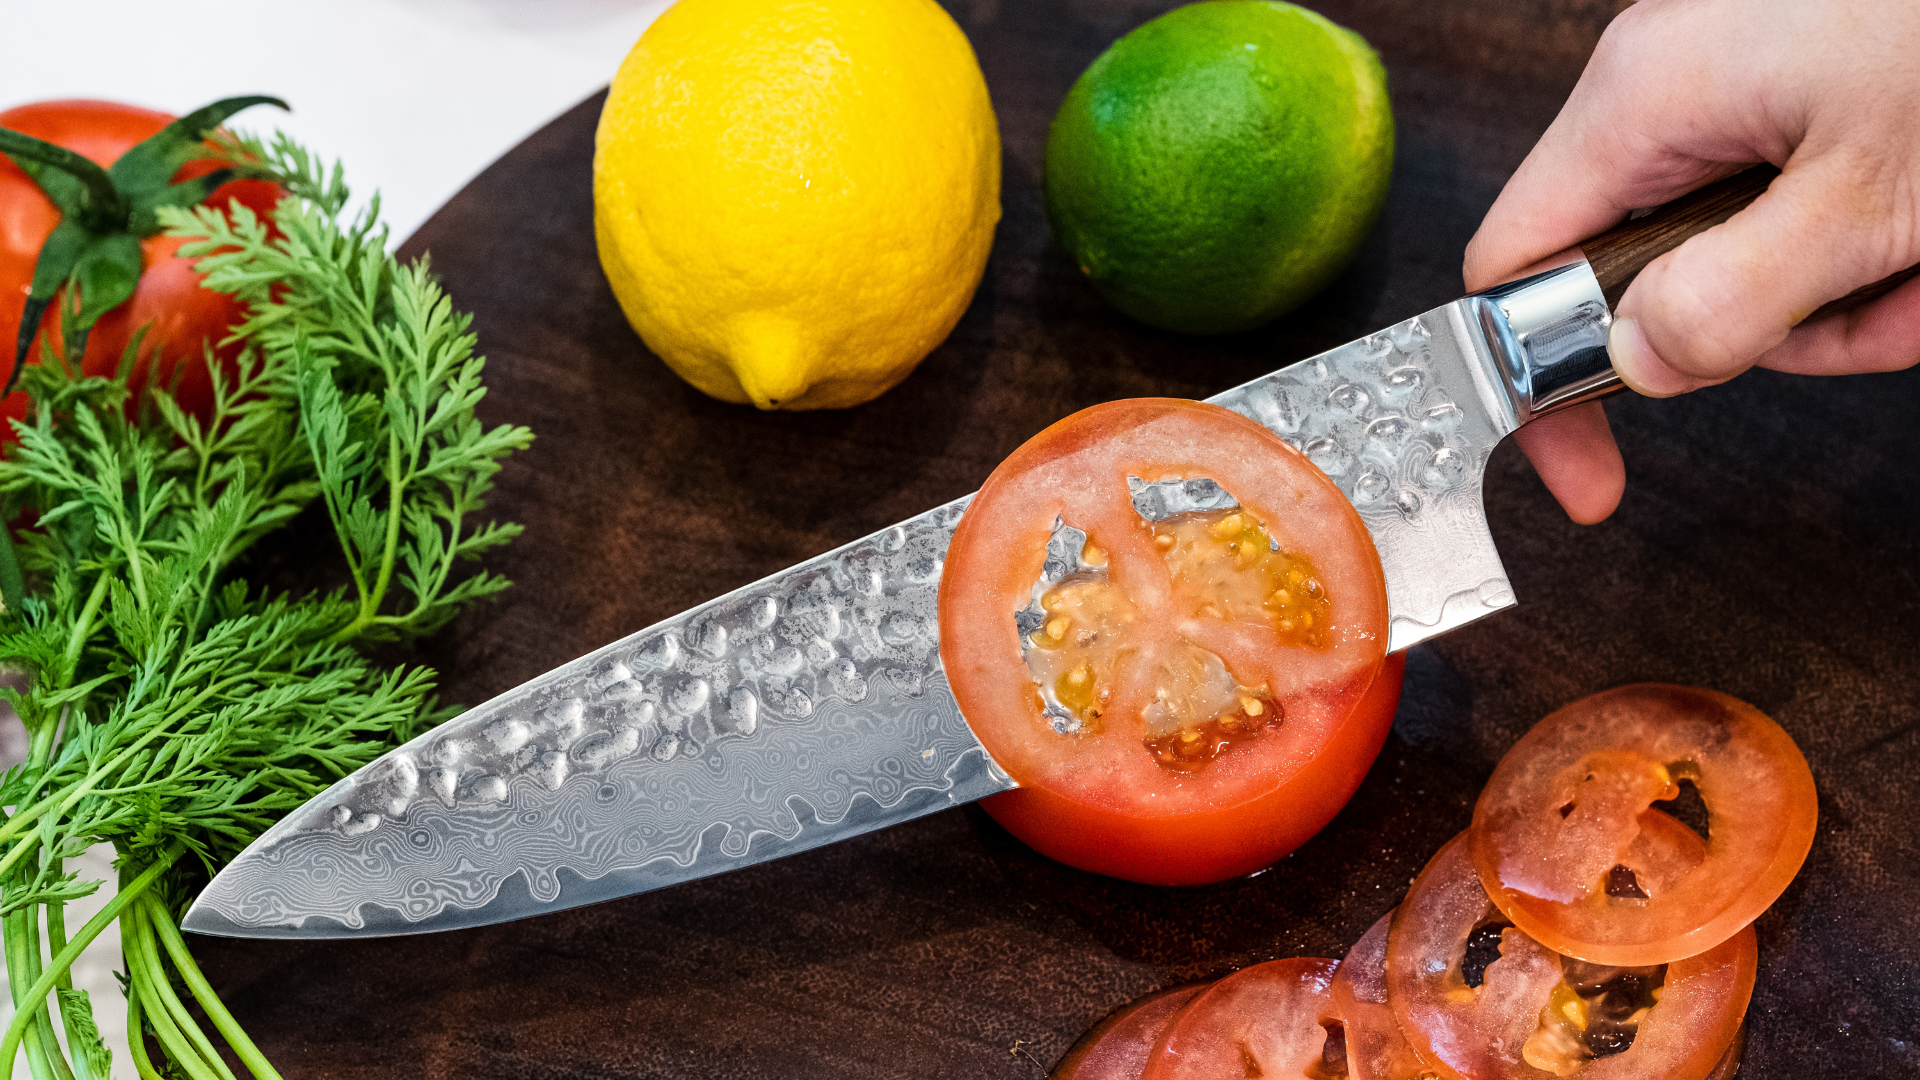 CHOLYS Professional Damascus Pattern Kitchen Knife Set of 3pcs